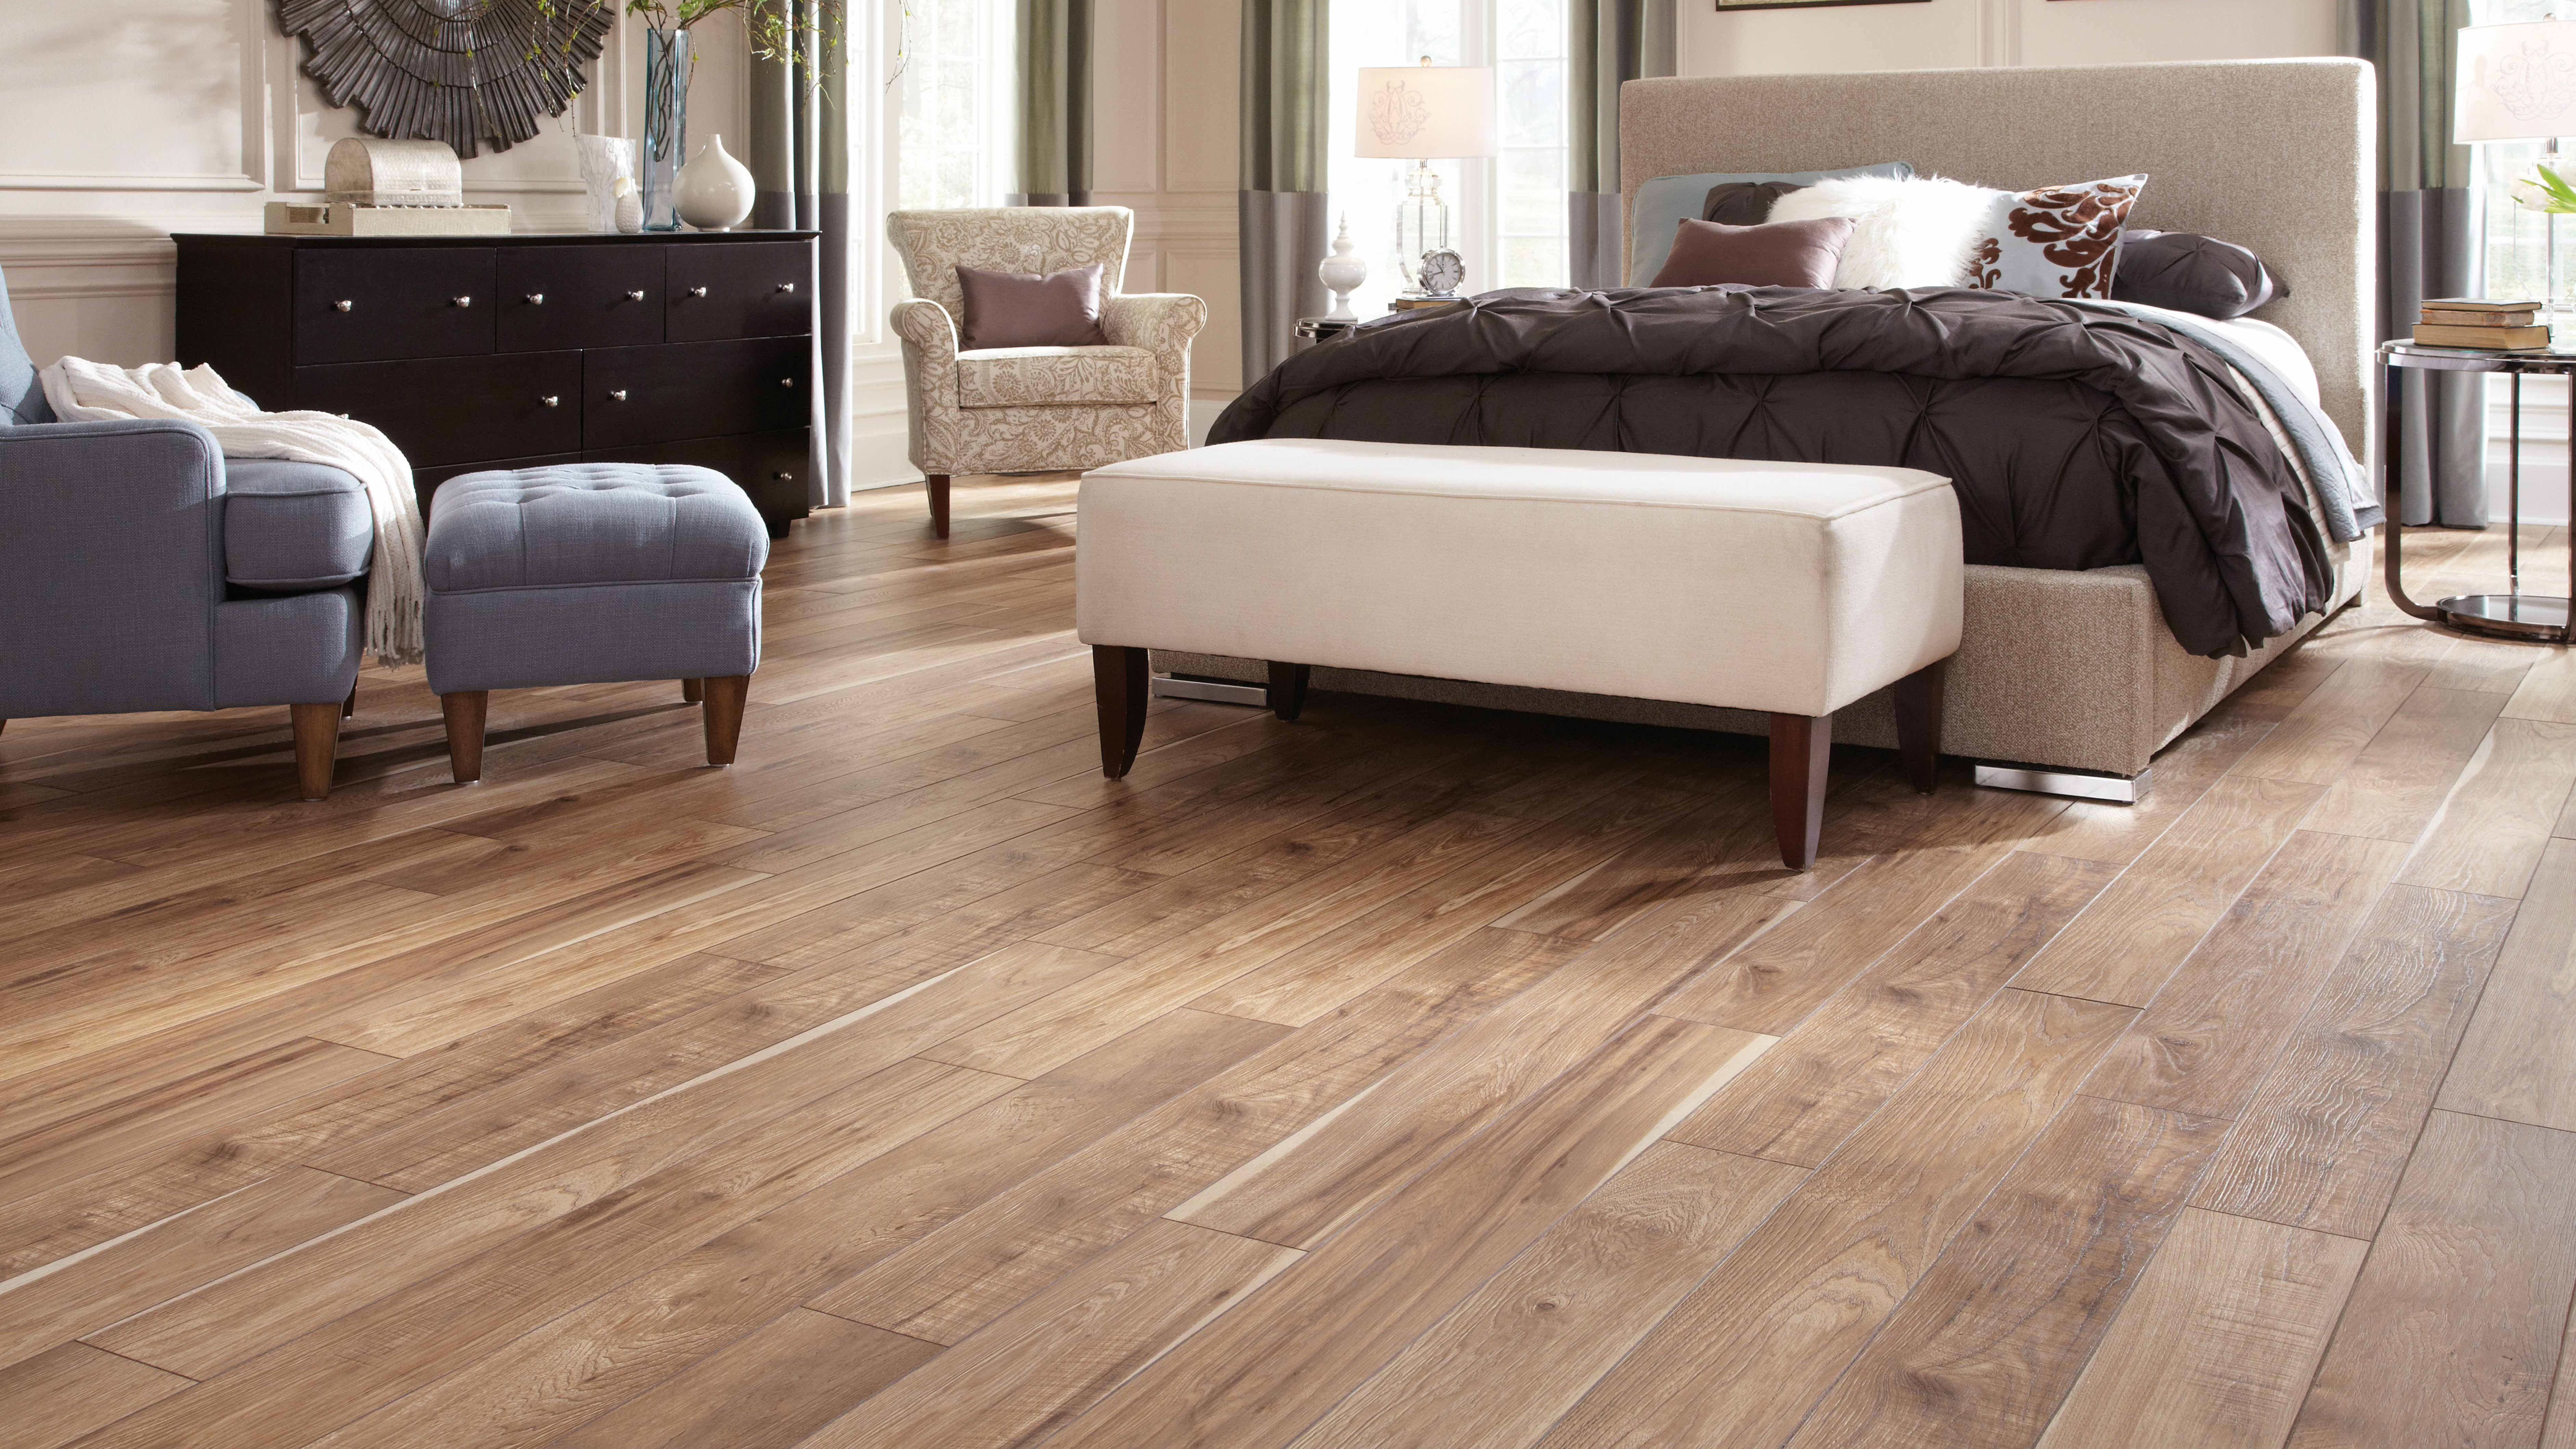 Laminate wood flooring in a bedroom